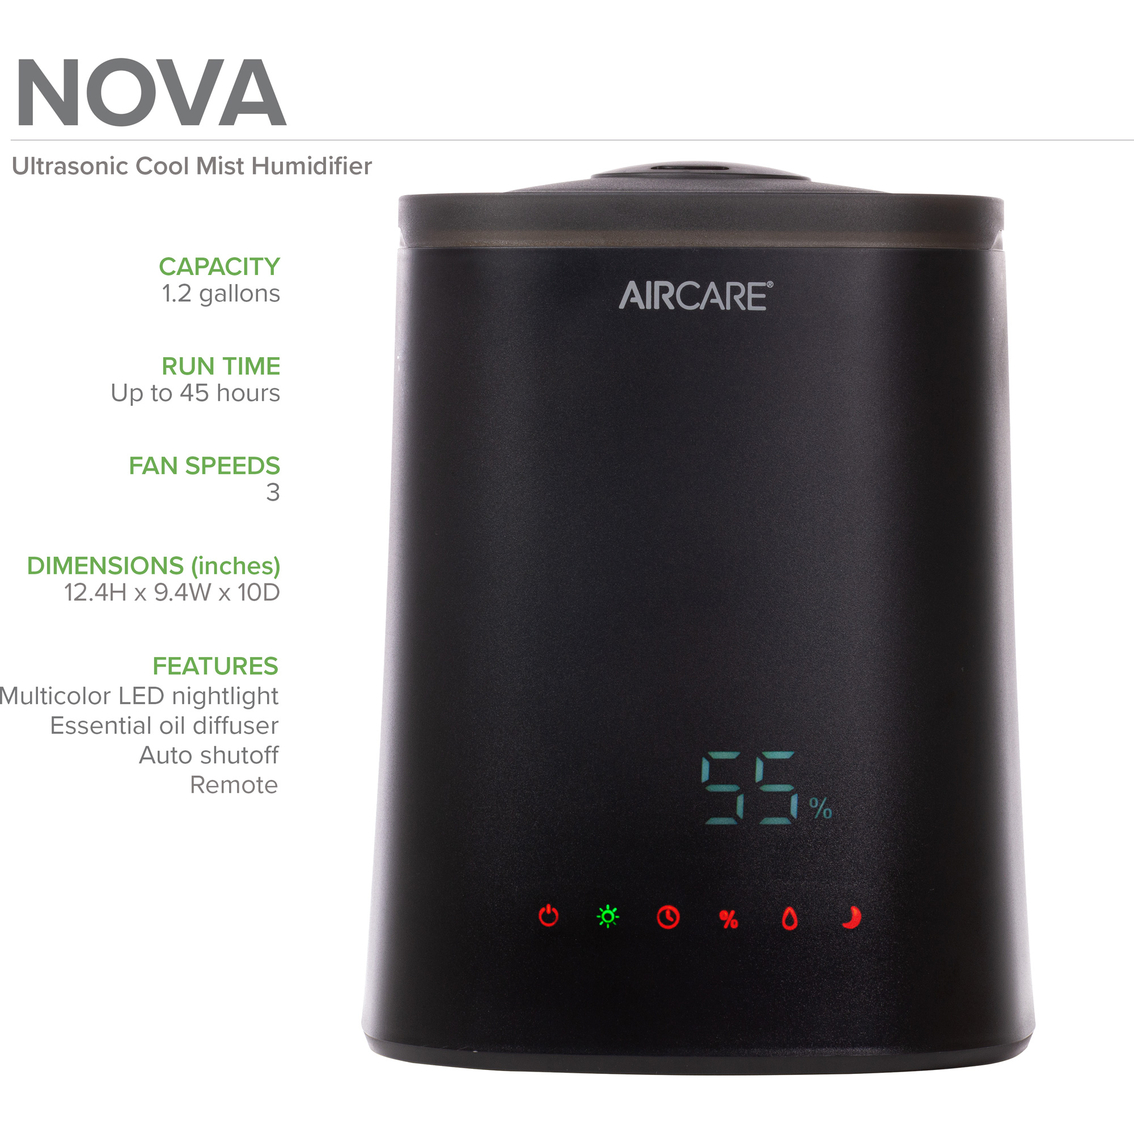 Aircare Nova Ultrasonic Humidifier - Image 4 of 4